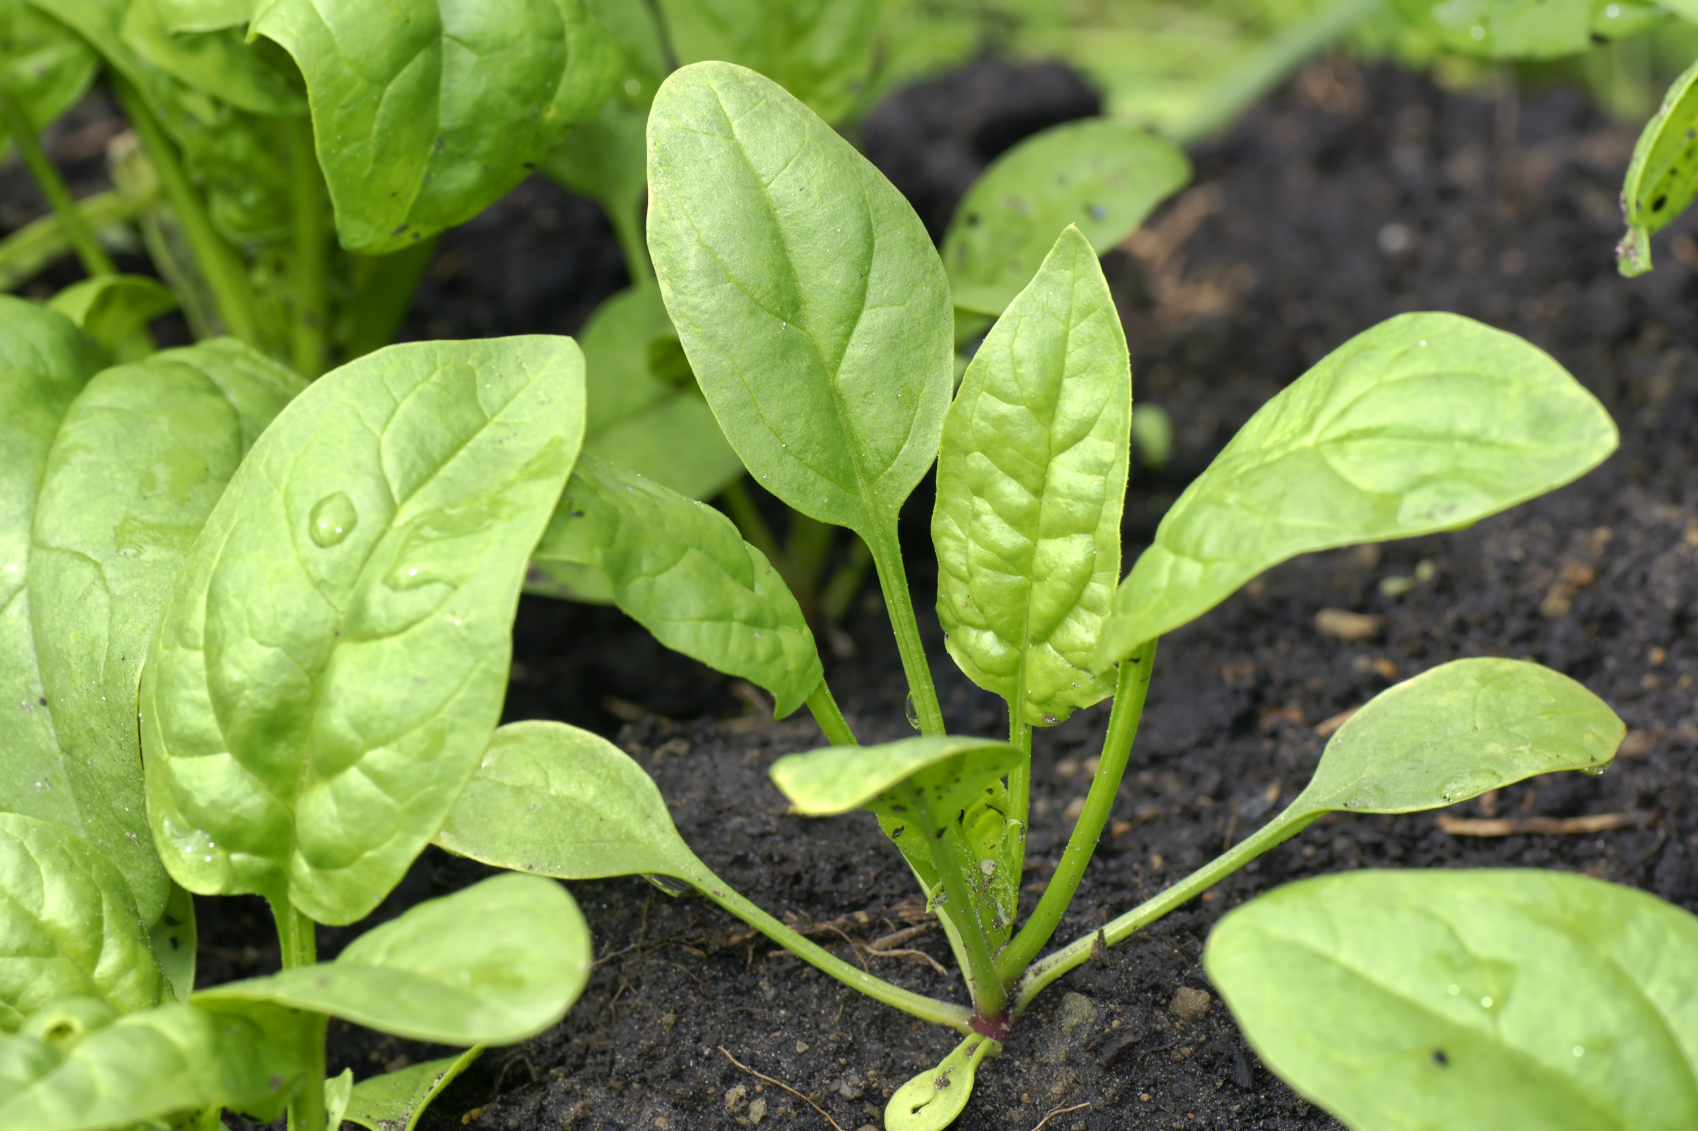 Baby spinach in the garden